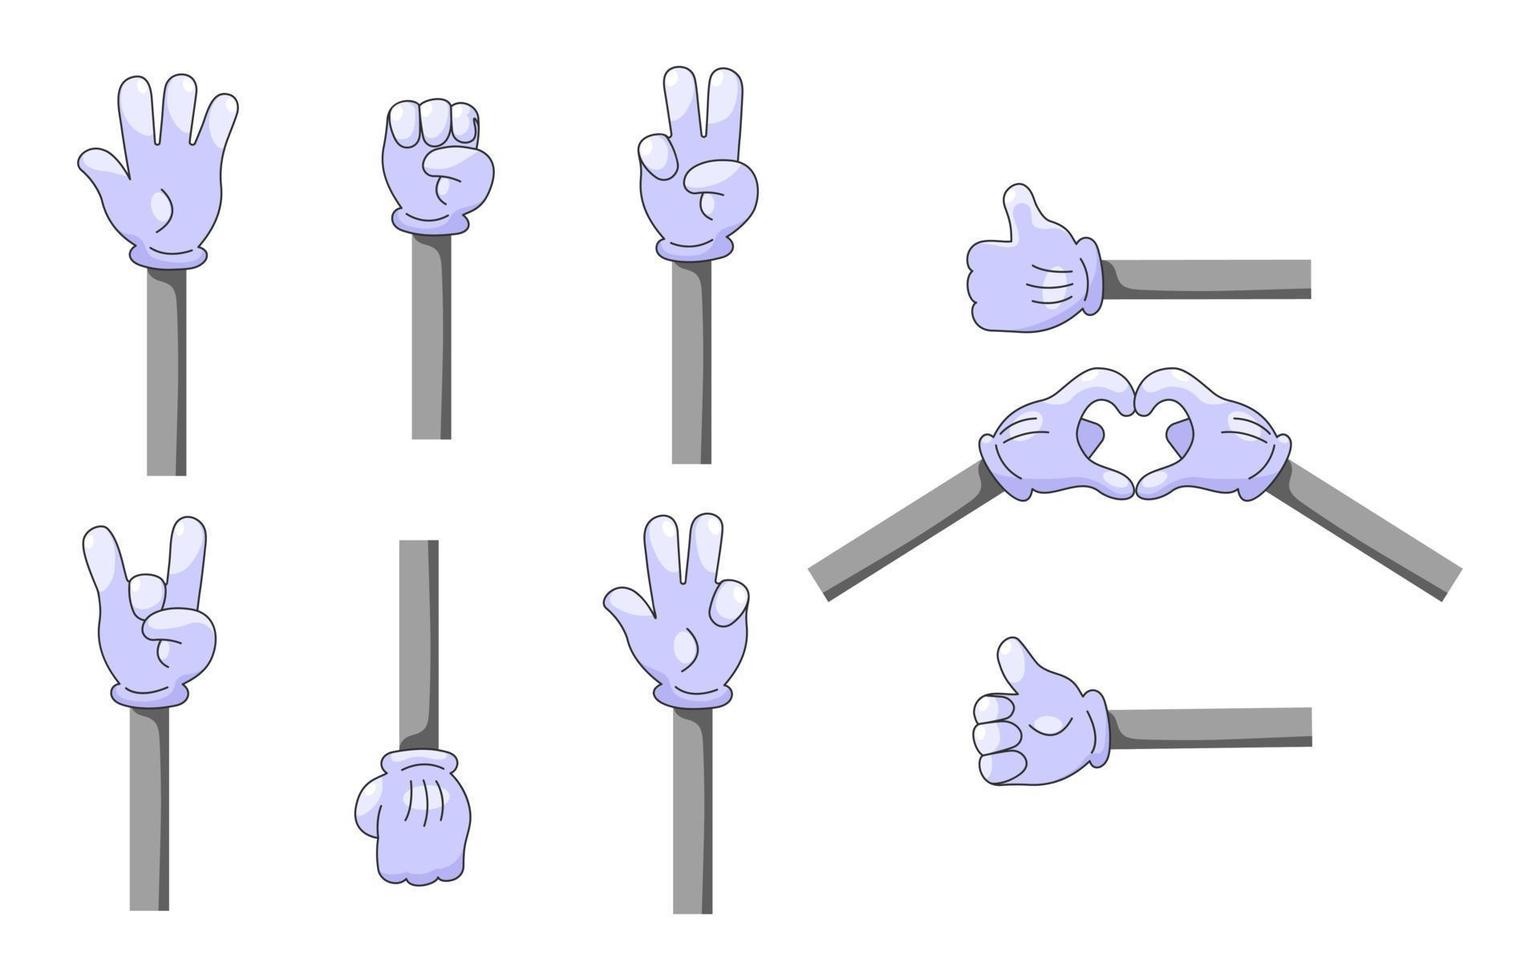 uppsättning av tecknade händer i handskar. retro komisk händer i handskar med olika gester. vektor illustration.